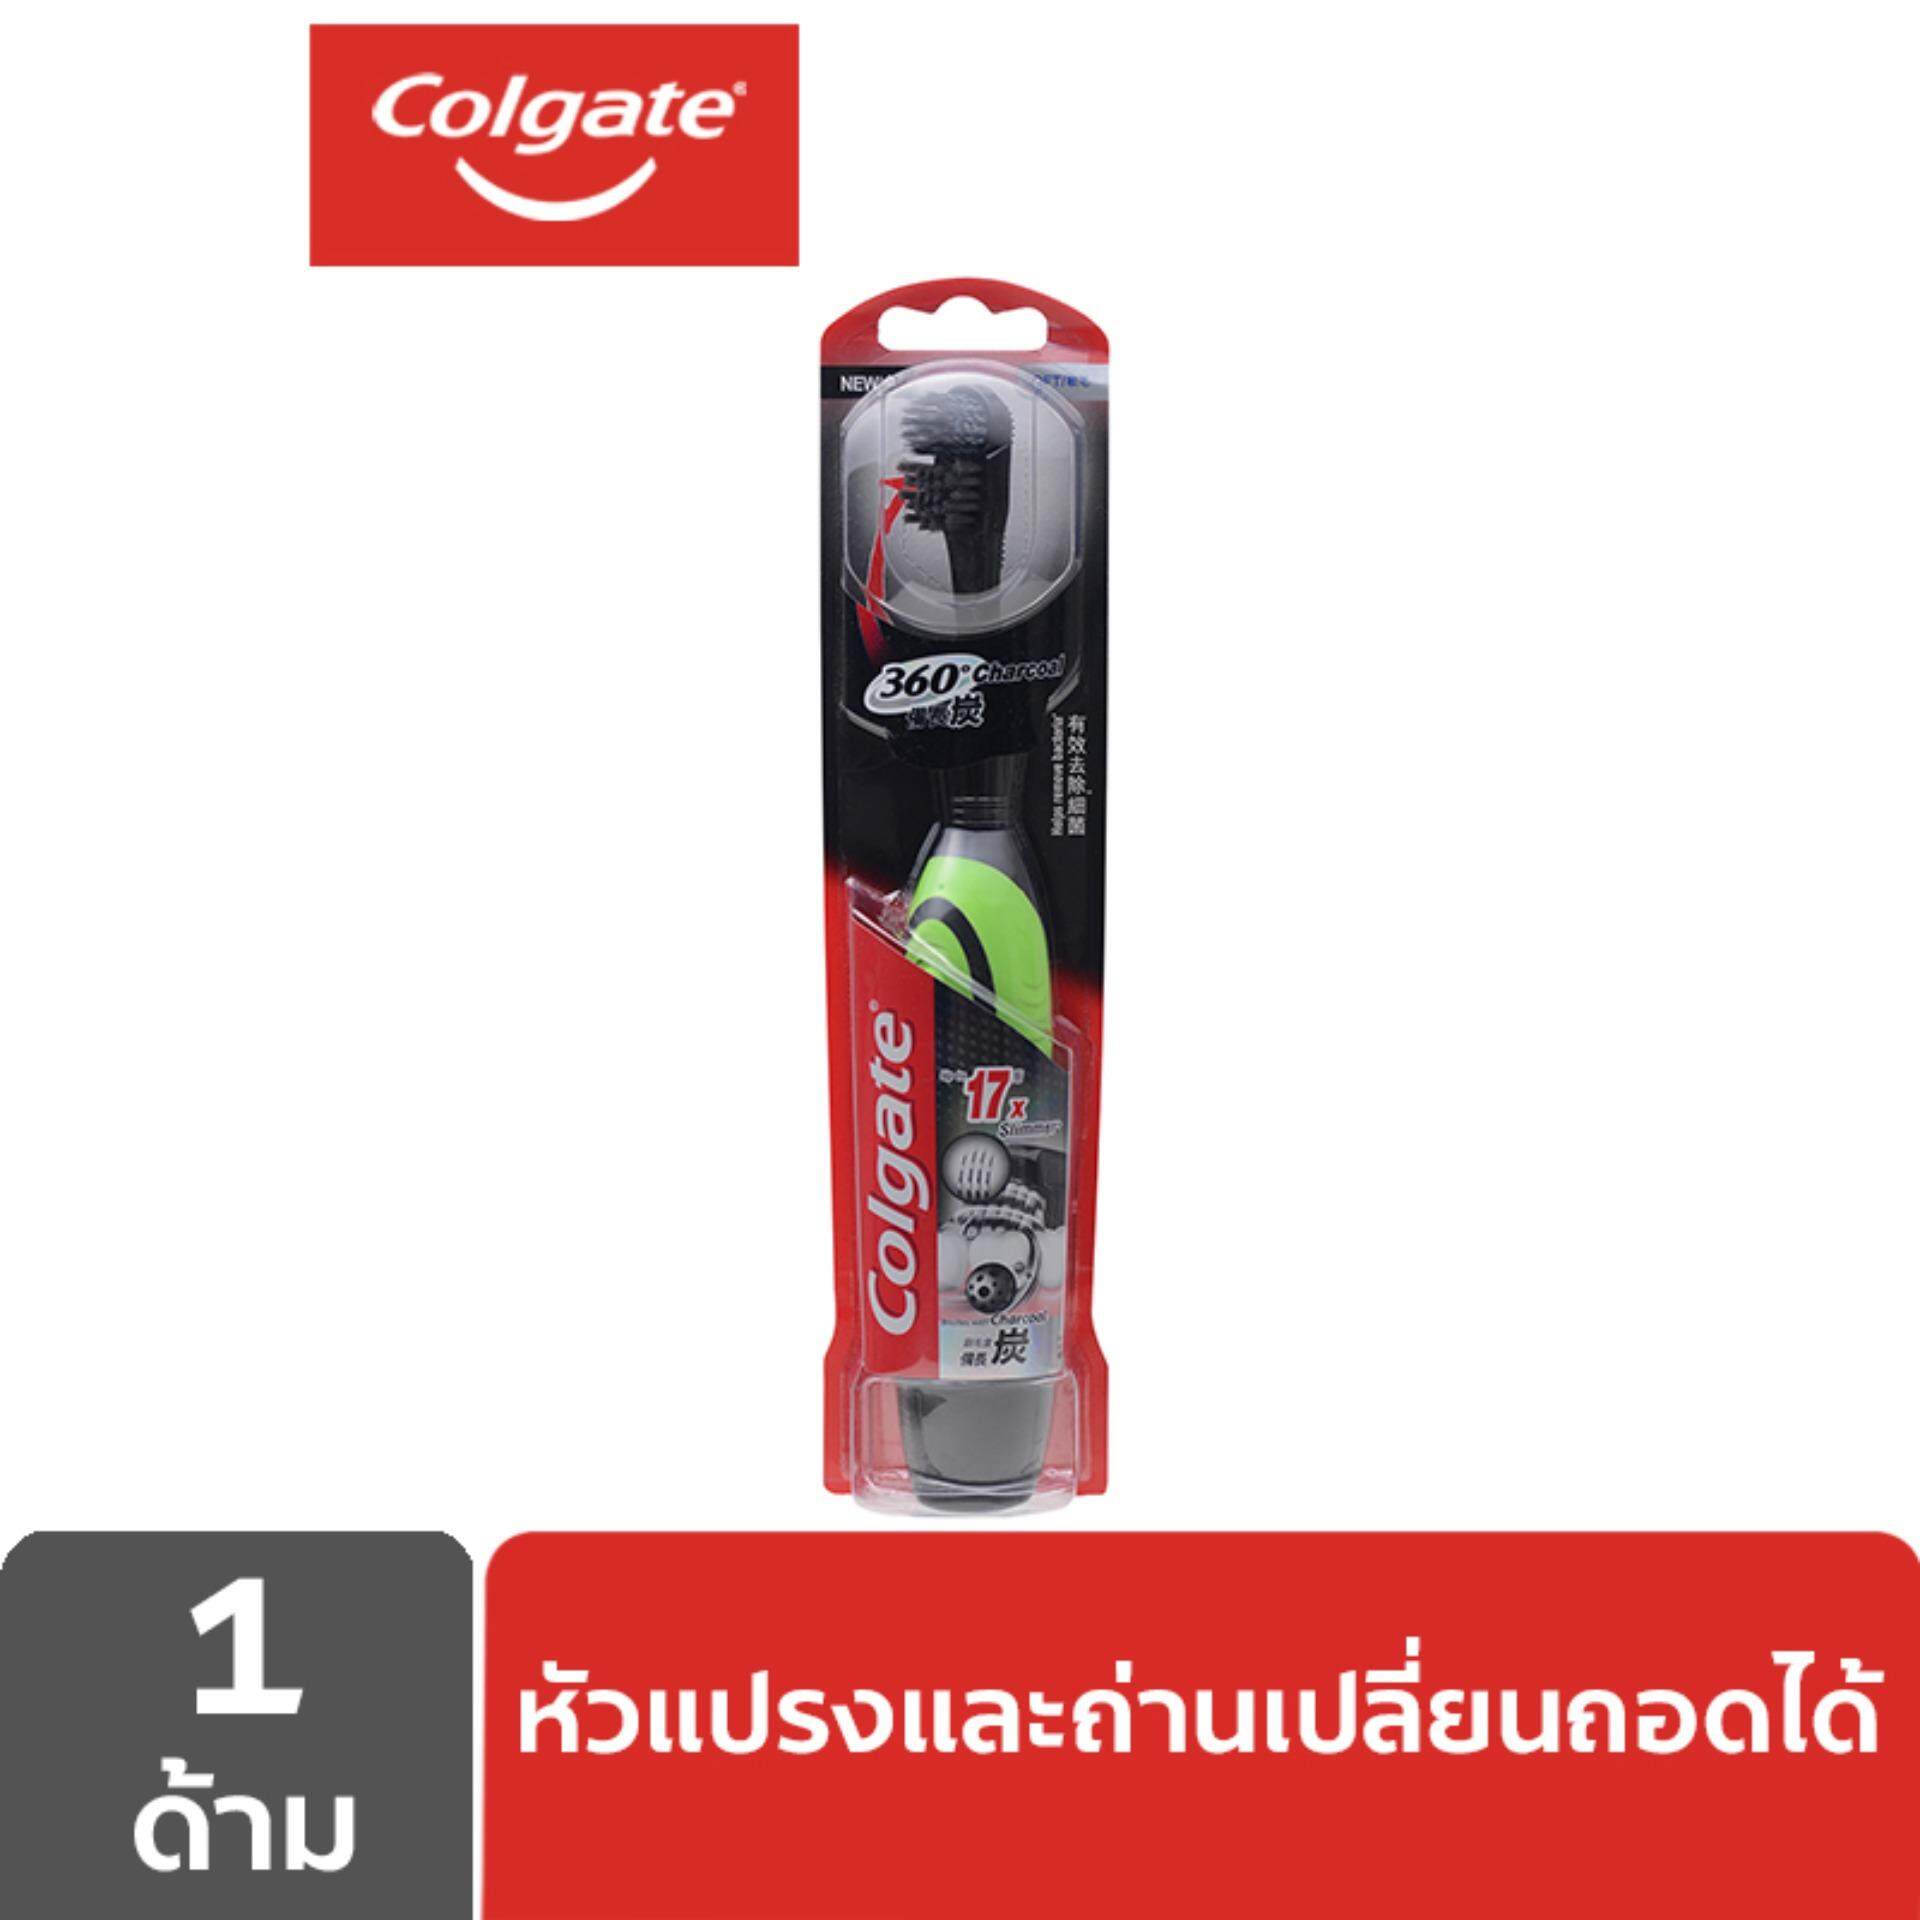  นราธิวาส แปรงสีฟันไฟฟ้าคอลเกต 360ชาร์โคล  สินค้านี้ด้ามแปรงคละสี  Colgate Power 360 Charcoal Toothbrush Pack 1  The powered toothbrush handle comes in a range of colors 